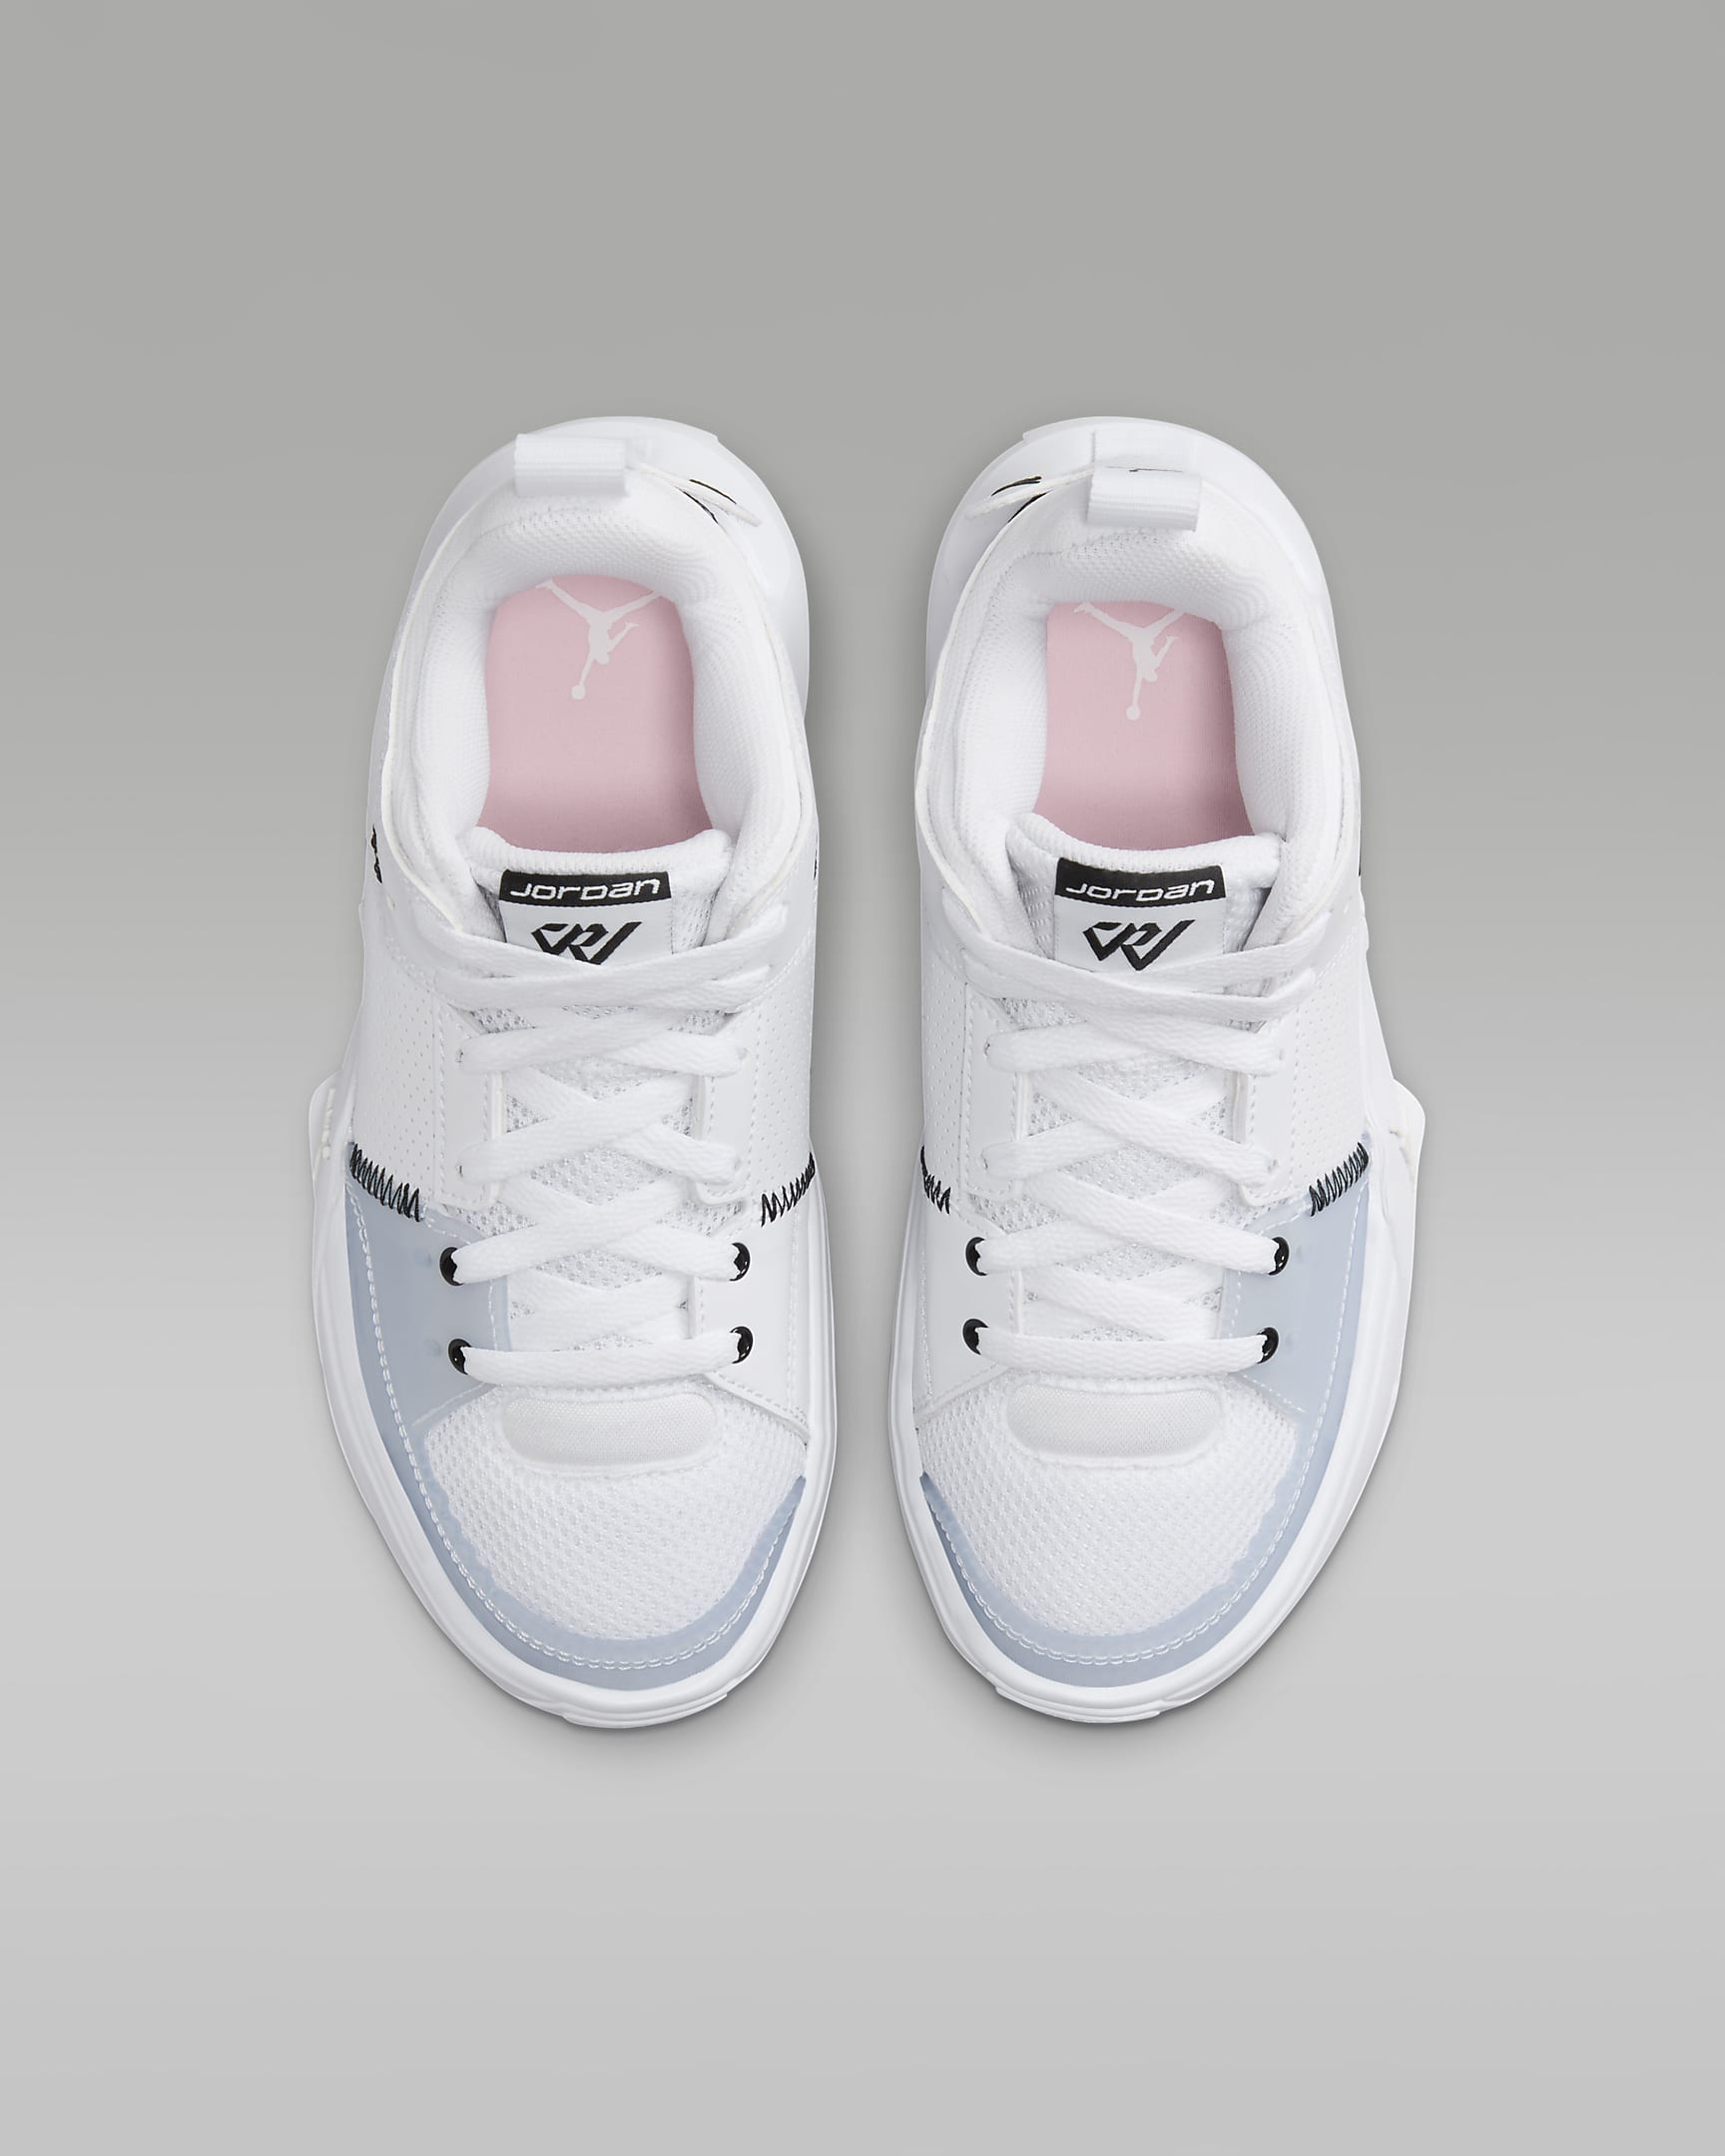 Jordan One Take 5 Older Kids' Shoes - White/Arctic Punch/Black